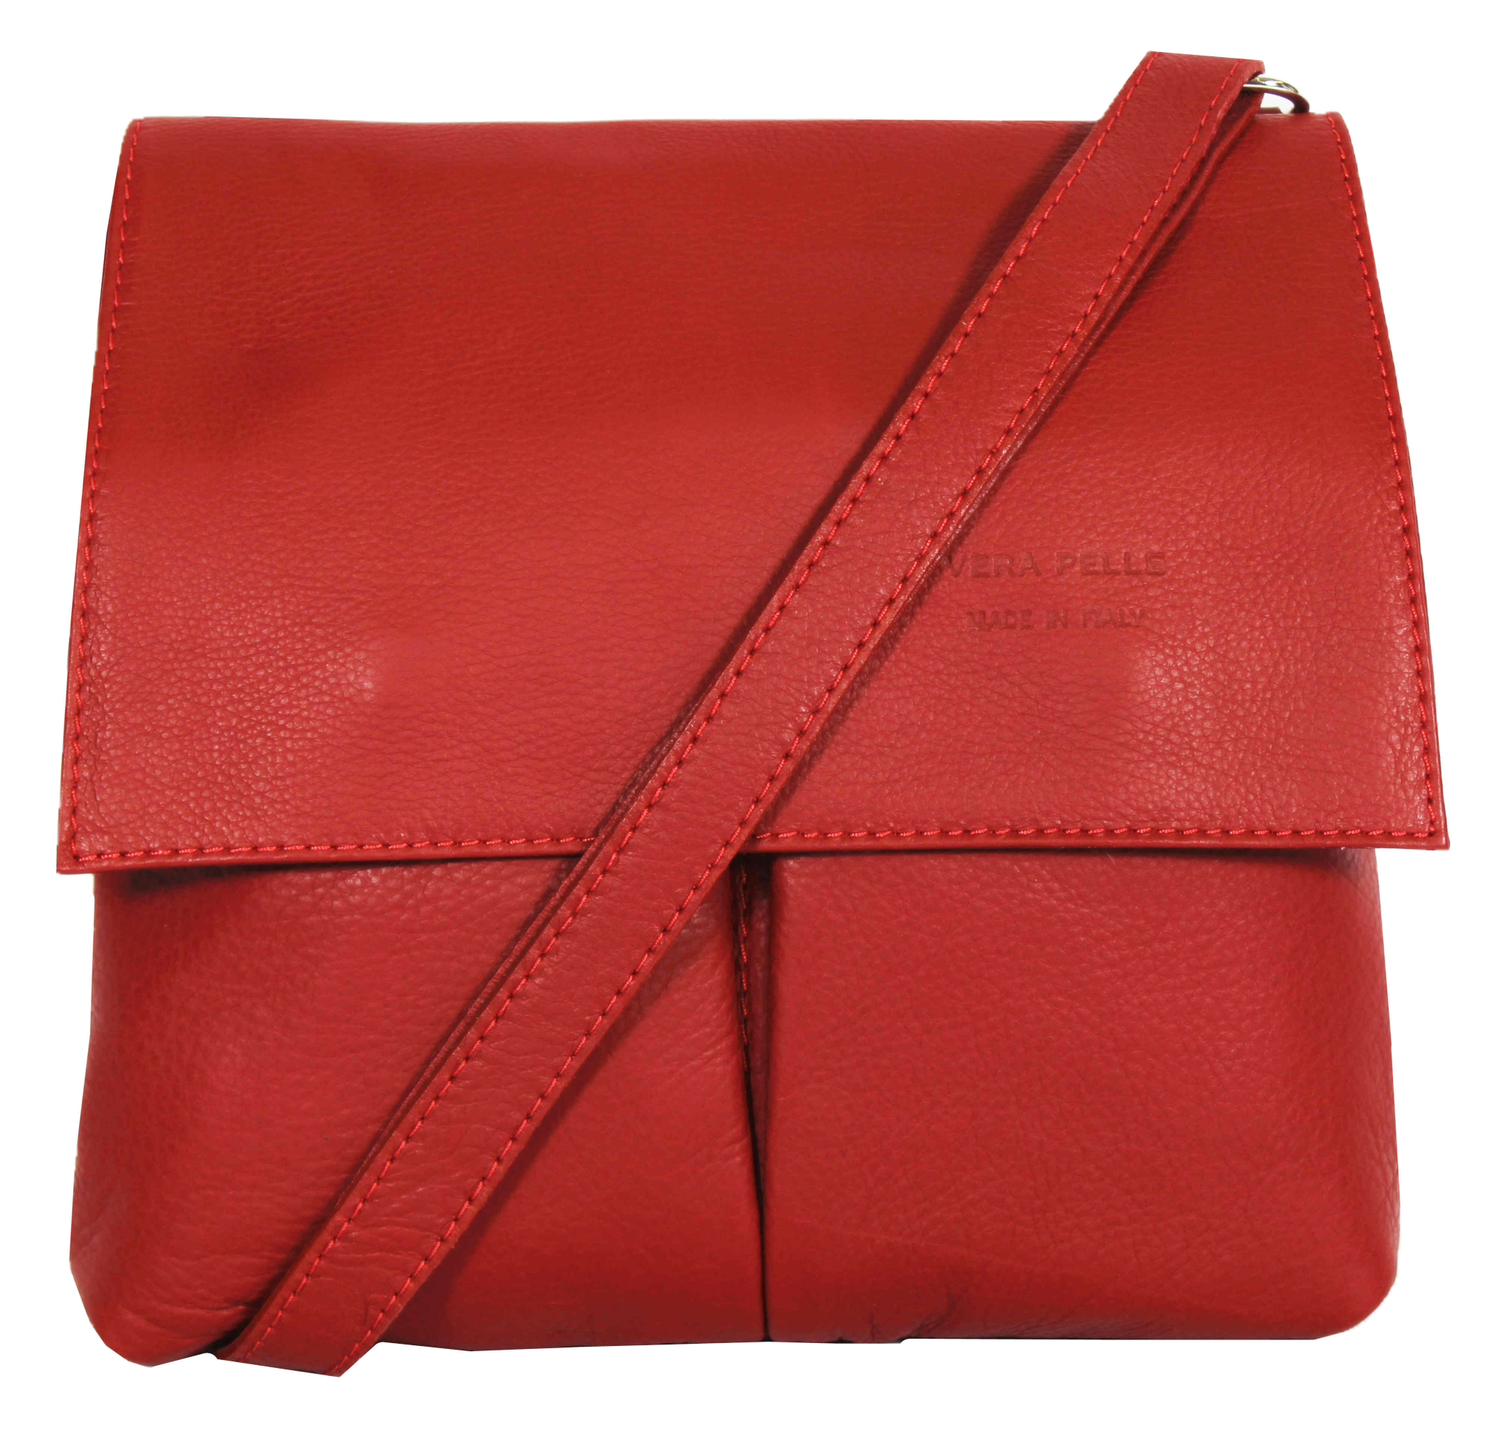 Red Soft Leather Messenger Bag